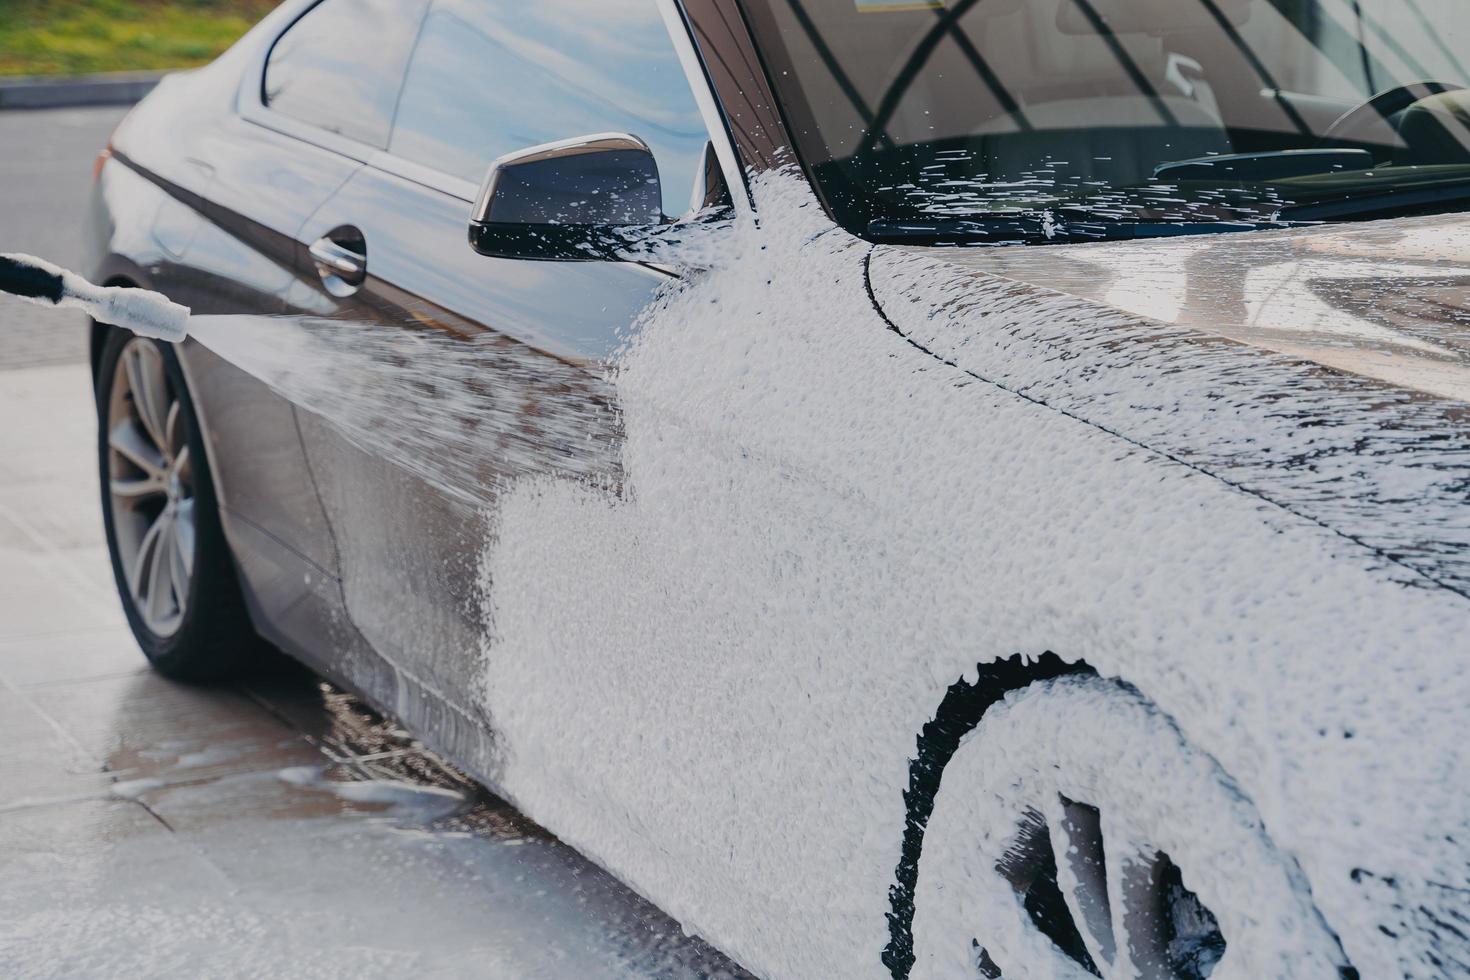 nettoyage de voiture à haute pression, pulvérisation de savon de lavage spécial sur le véhicule avec nettoyeur haute pression à l'extérieur photo